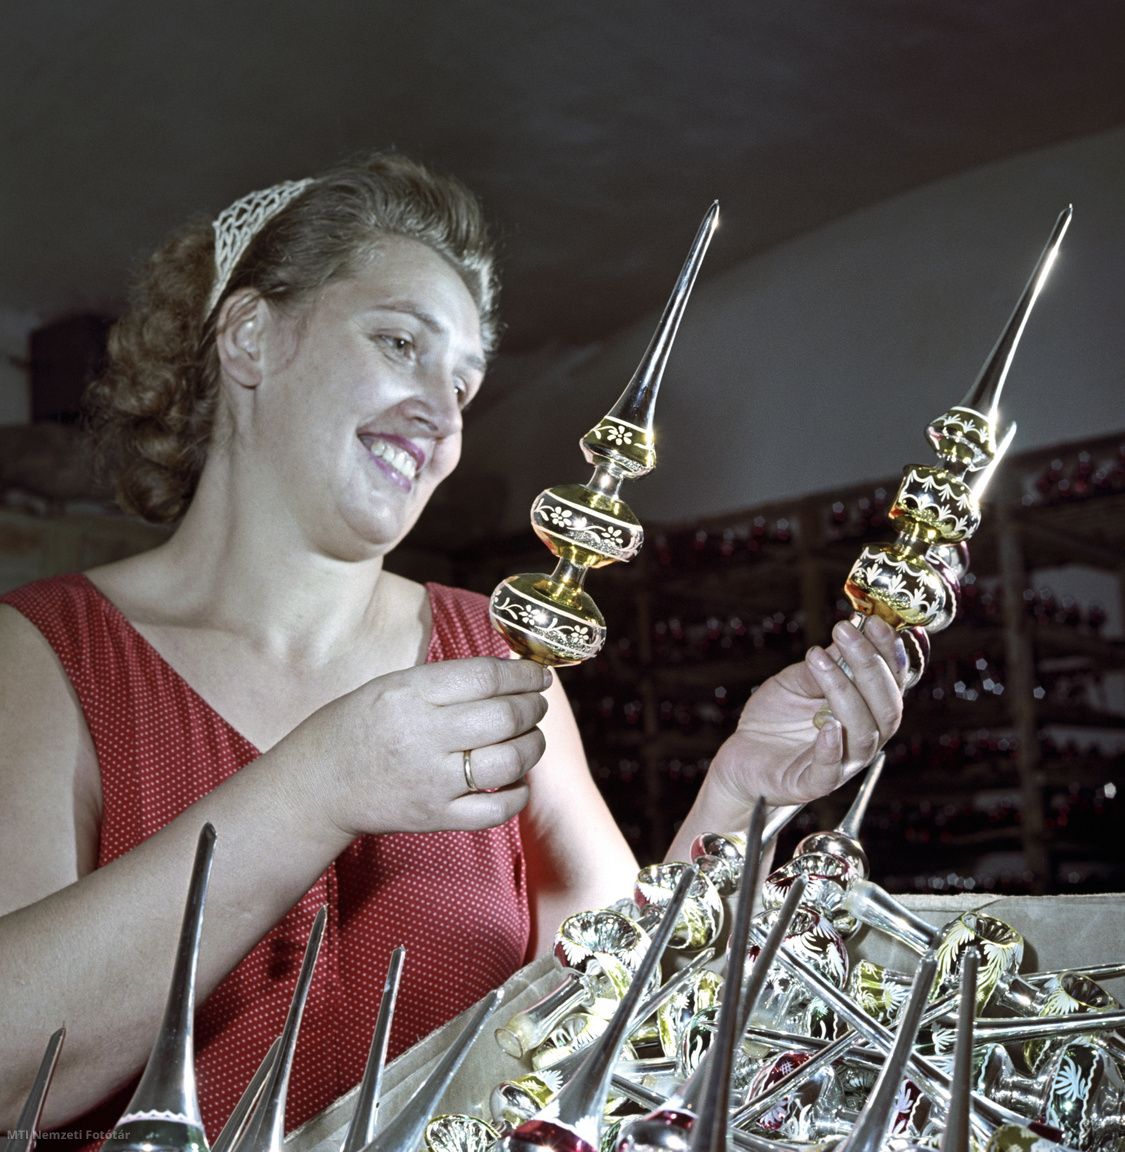 1958. november 5. Az elkészült, a karácsonyfára kerülő üveg csúcsdíszek minőségét ellenőrzi egy dolgozó. A felvétel készítésének pontos helye ismeretlen.